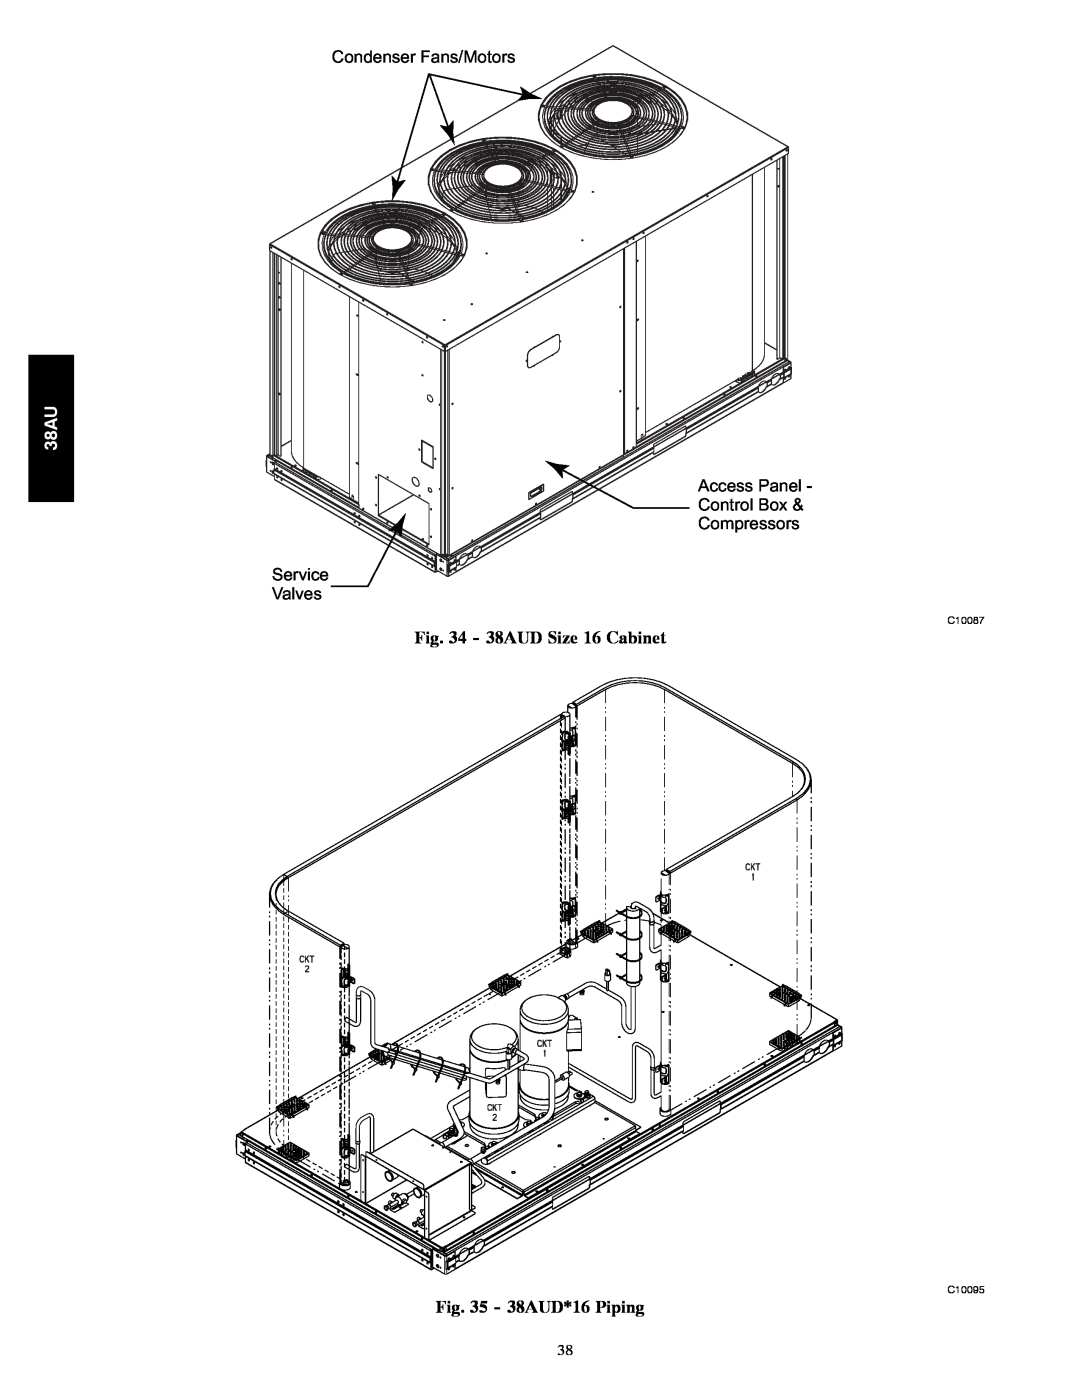 Carrier Condenser Fans/Motors Access Panel Control Box, Compressors Service Valves, 38AUD Size 16 Cabinet, C10087 